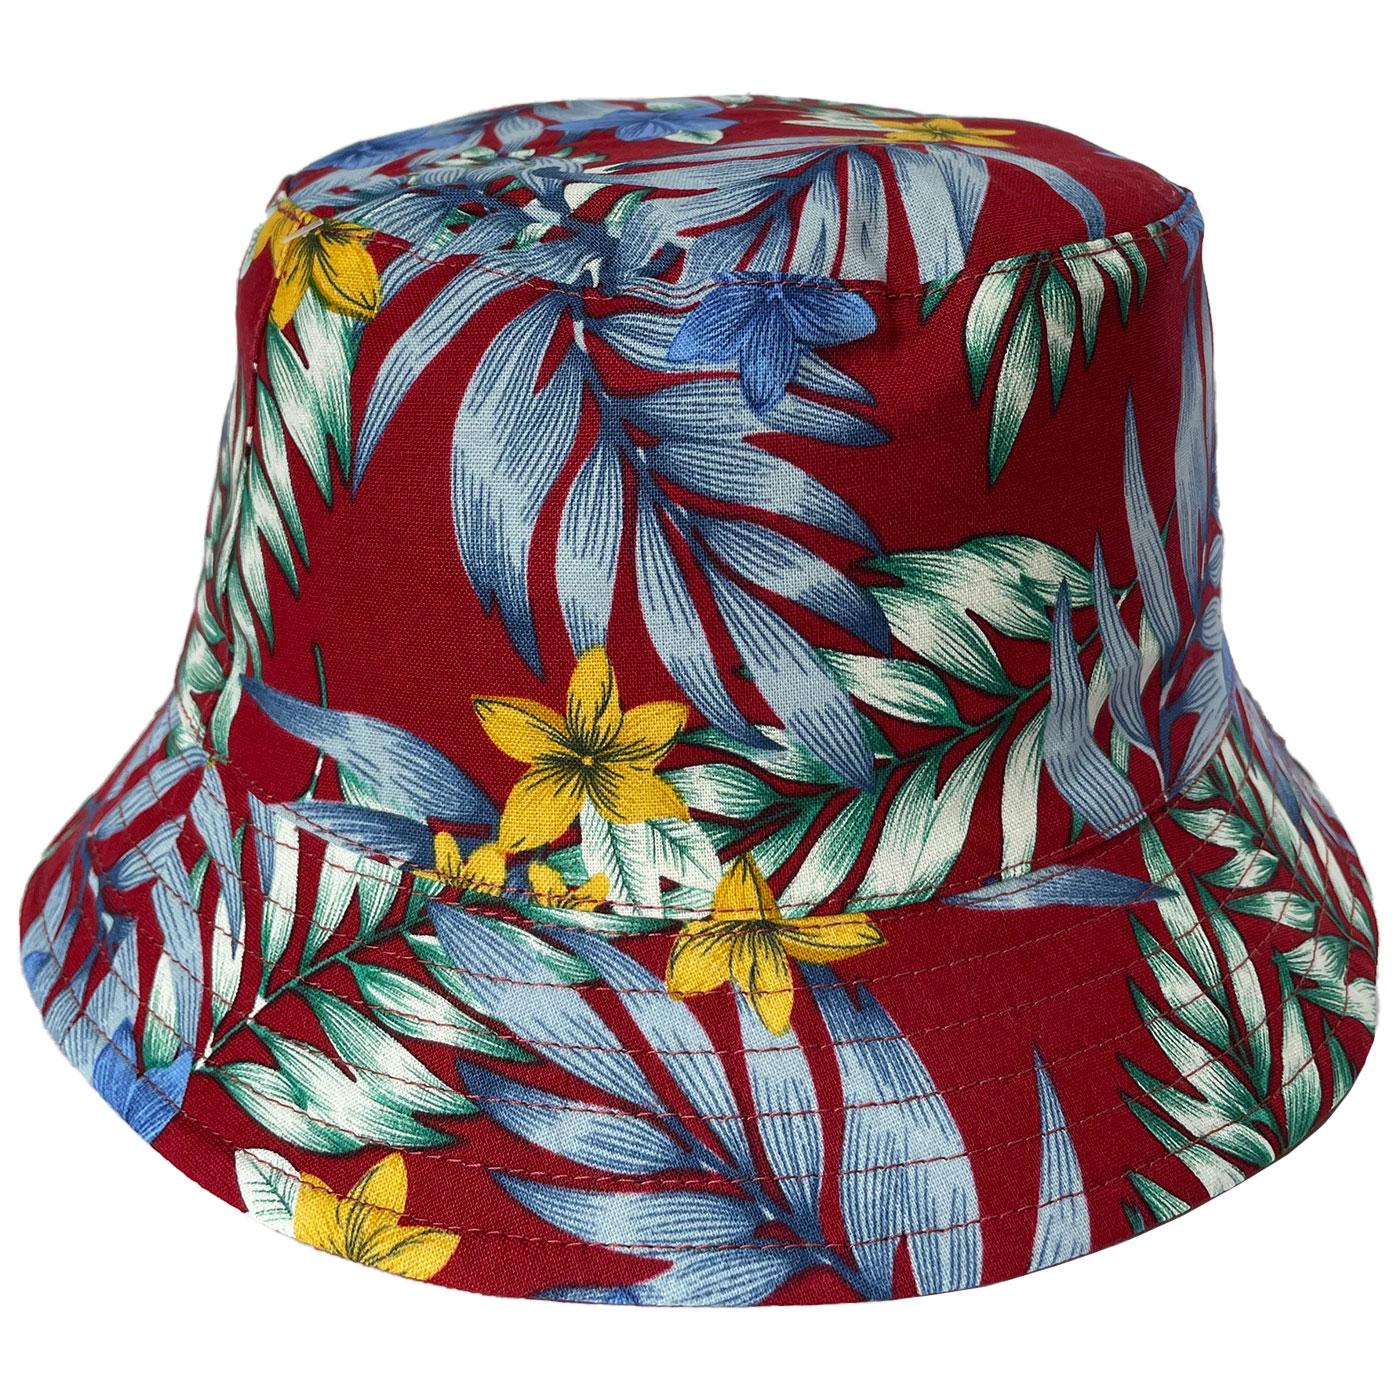 FAILSWORTH Retro 90s Reversible Floral Bucket Hat